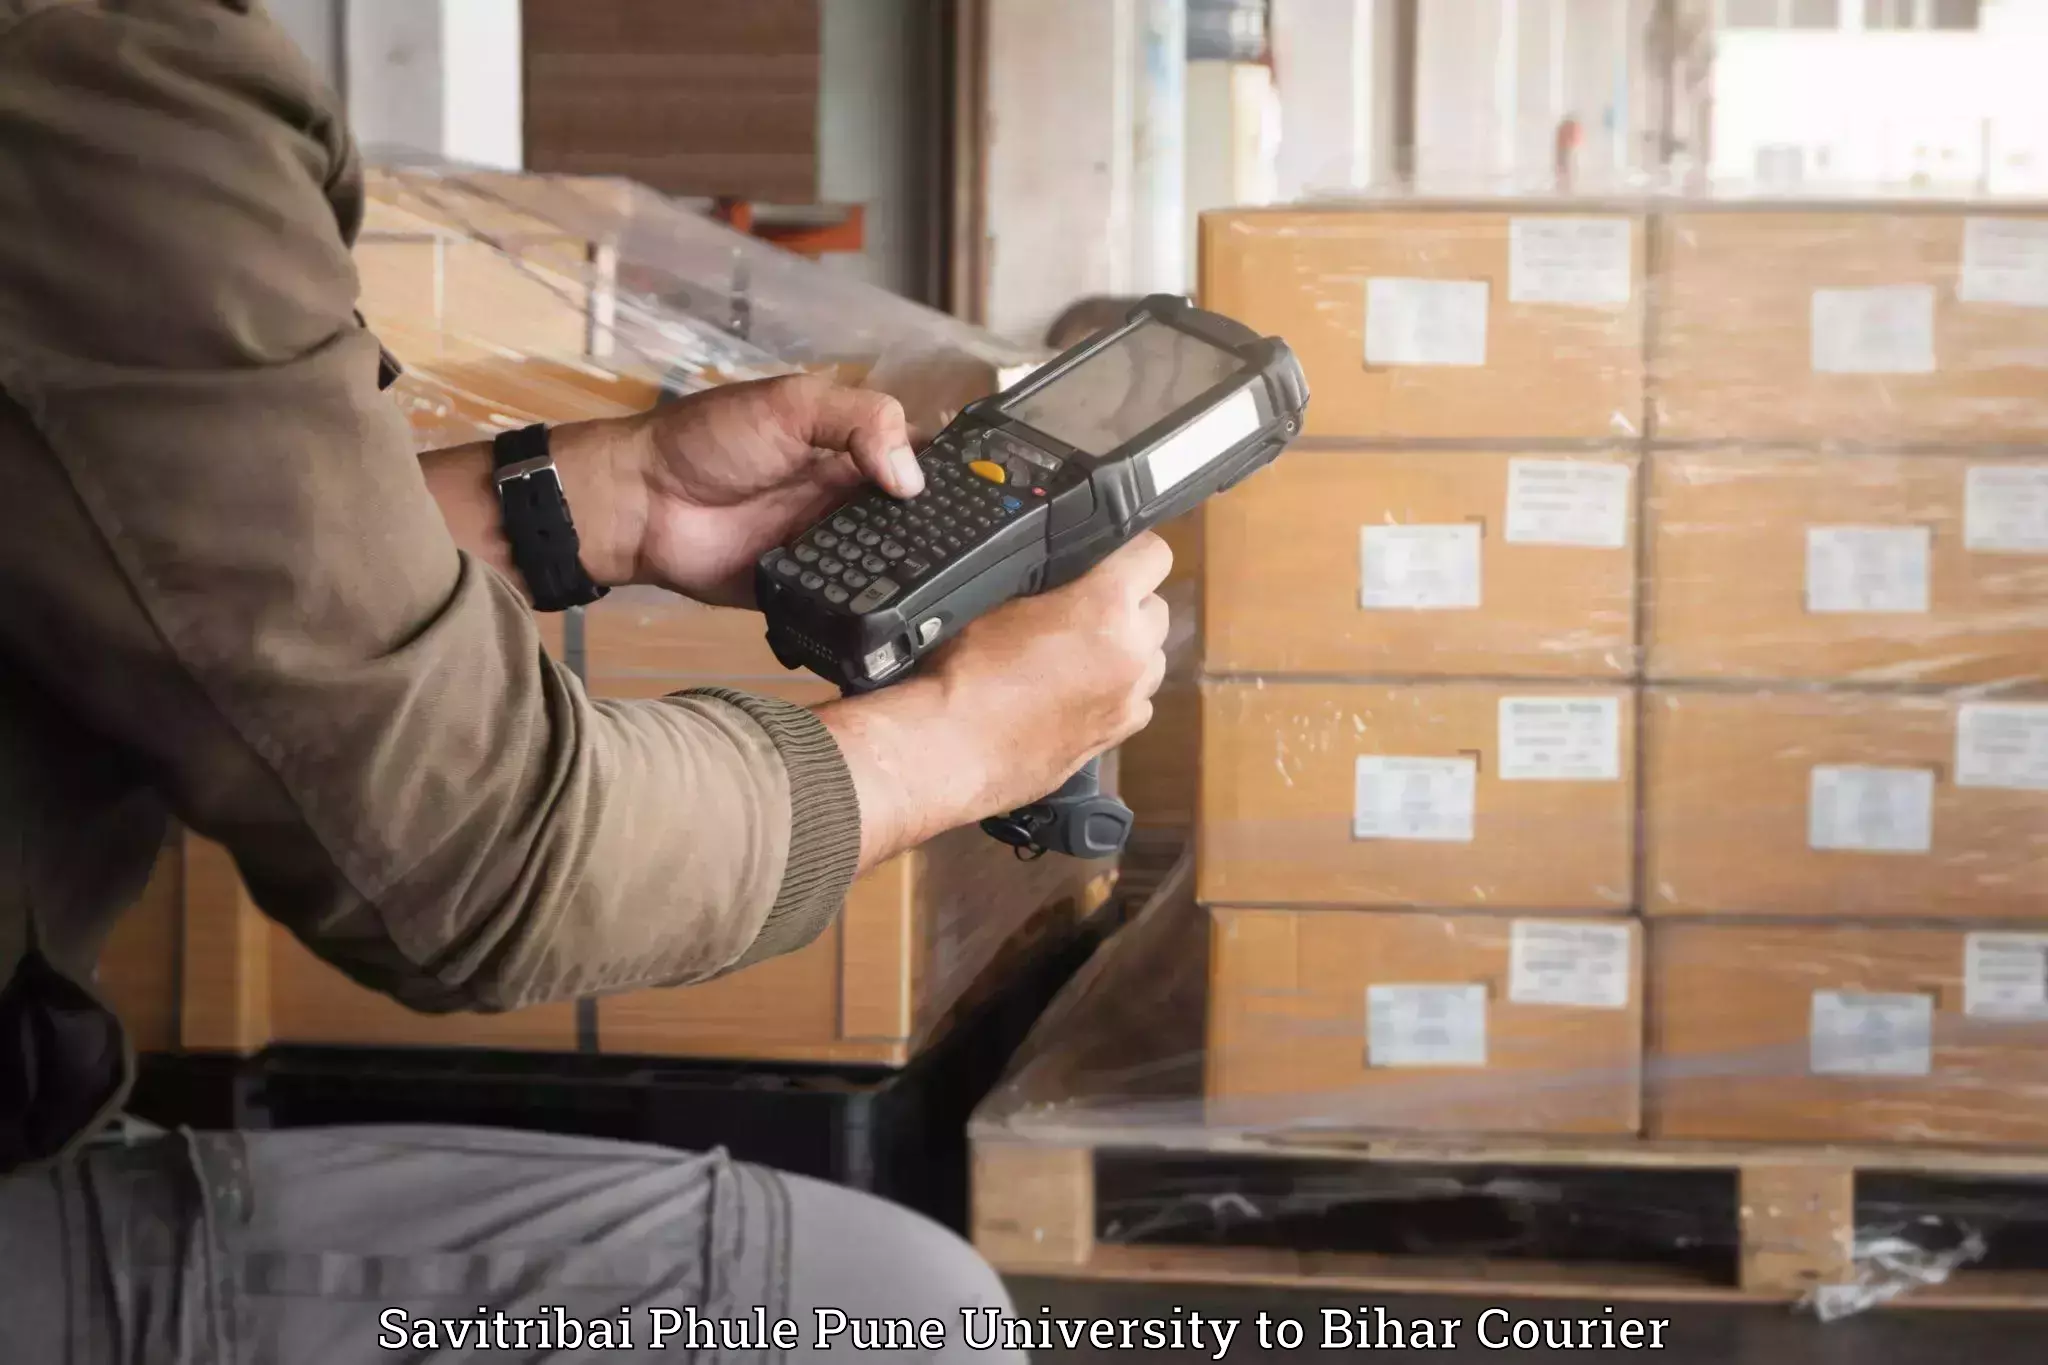 Luggage dispatch service Savitribai Phule Pune University to Valmiki Nagar